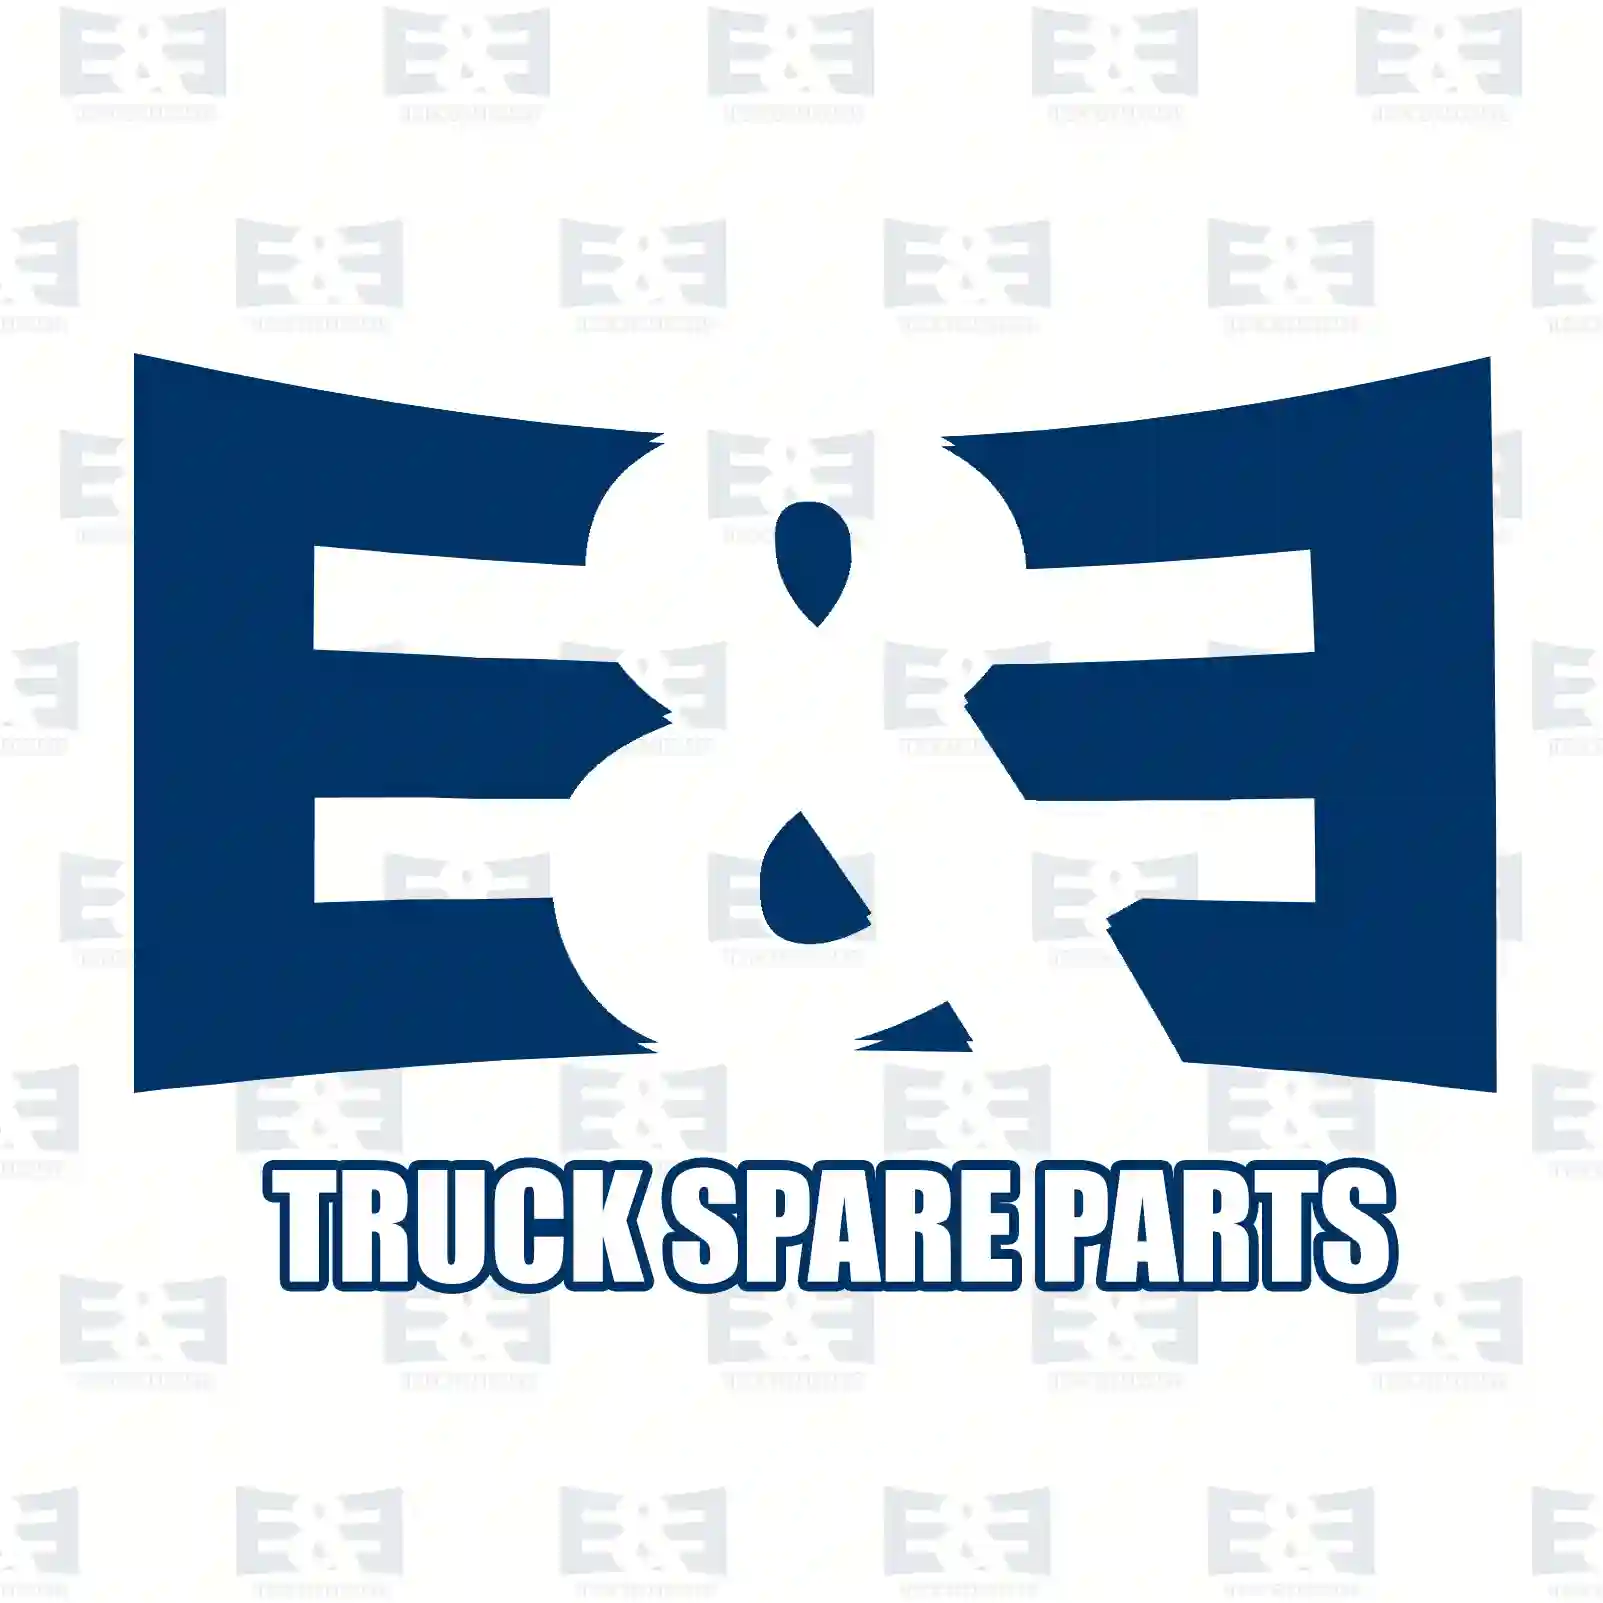 Hub Oil seal, EE No 2E2284022 ,  oem no:42548295, 93163213, 36965030001, N1011013959, N1011013961, 0139975946, 0239972647, 011013959, 072132300, 1415136, 1438136, 85109330, ZG02710-0008 E&E Truck Spare Parts | Truck Spare Parts, Auotomotive Spare Parts